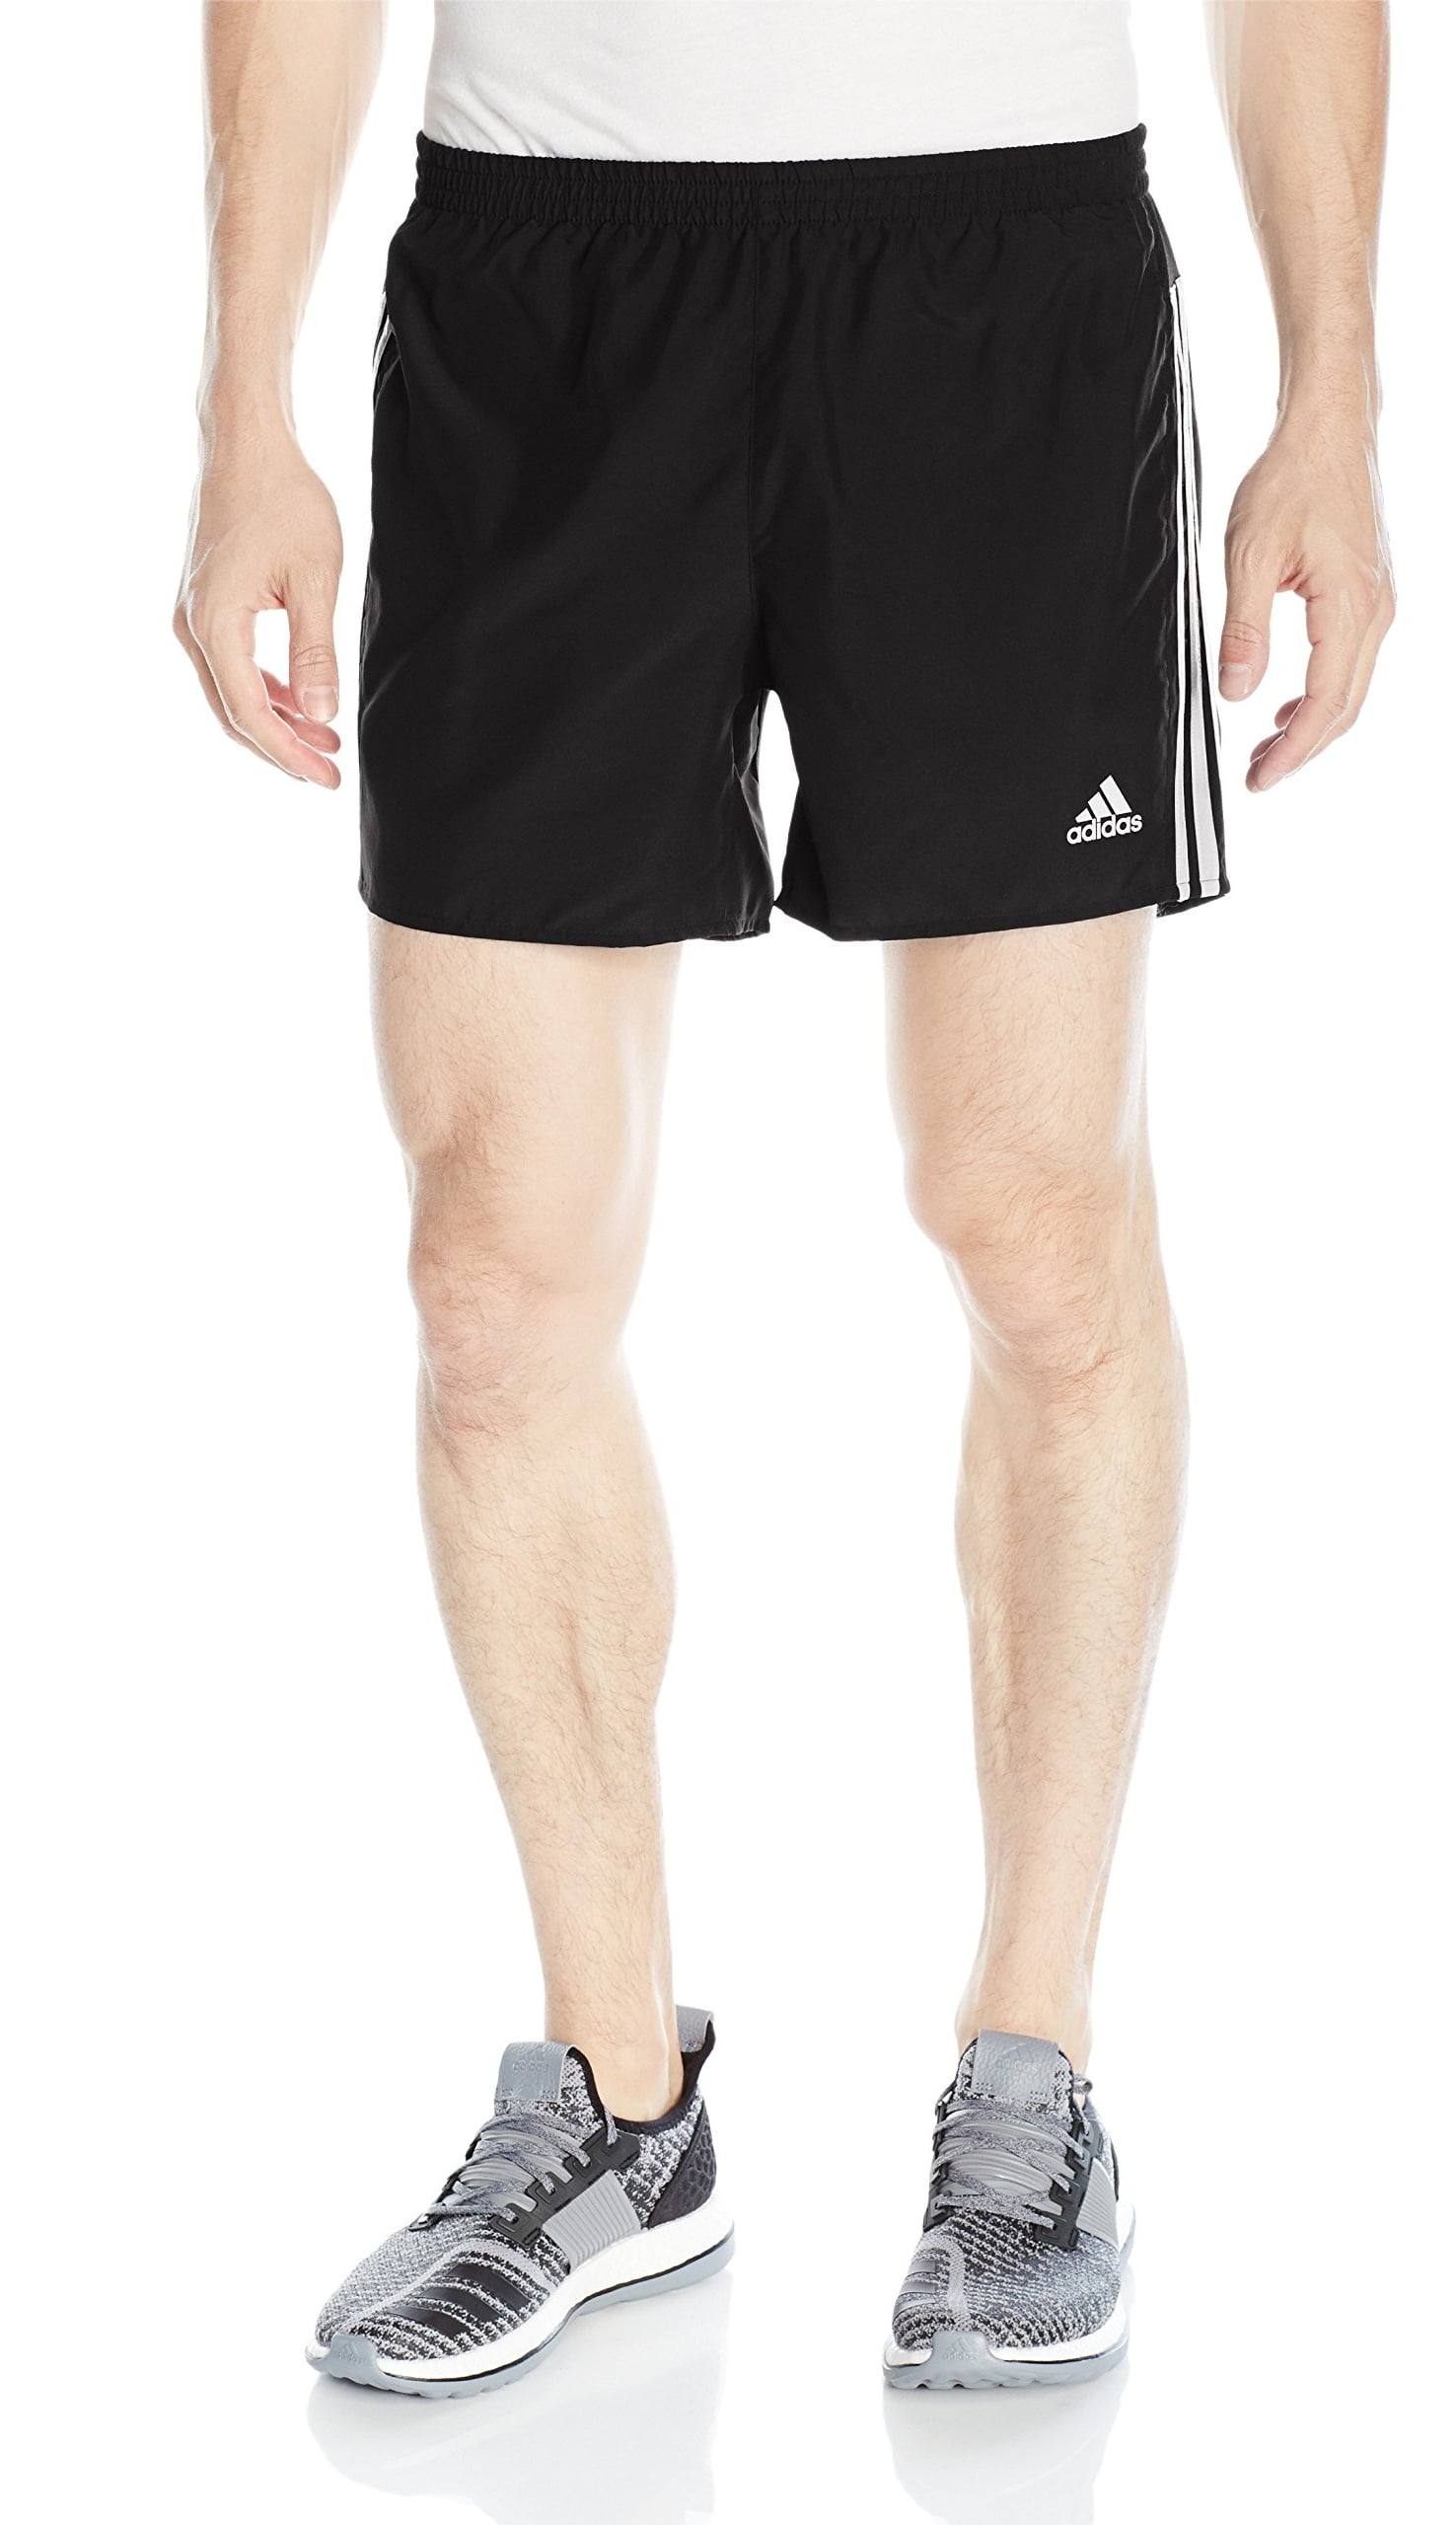 adidas response running shorts